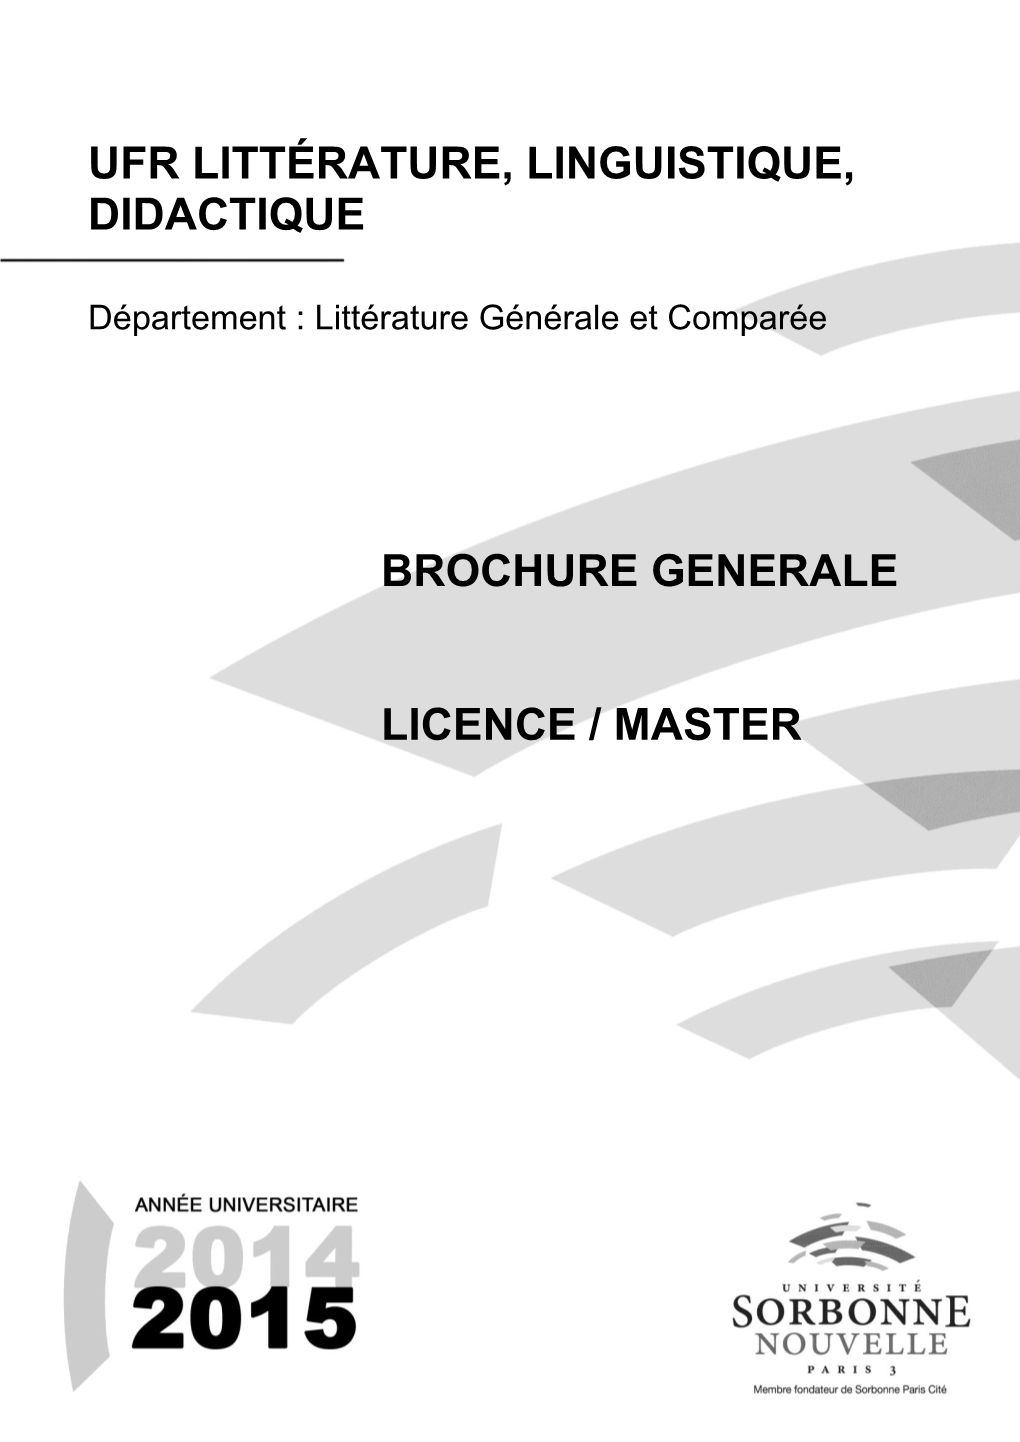 Ufr Littérature, Linguistique, Didactique Brochure Generale Licence / Master